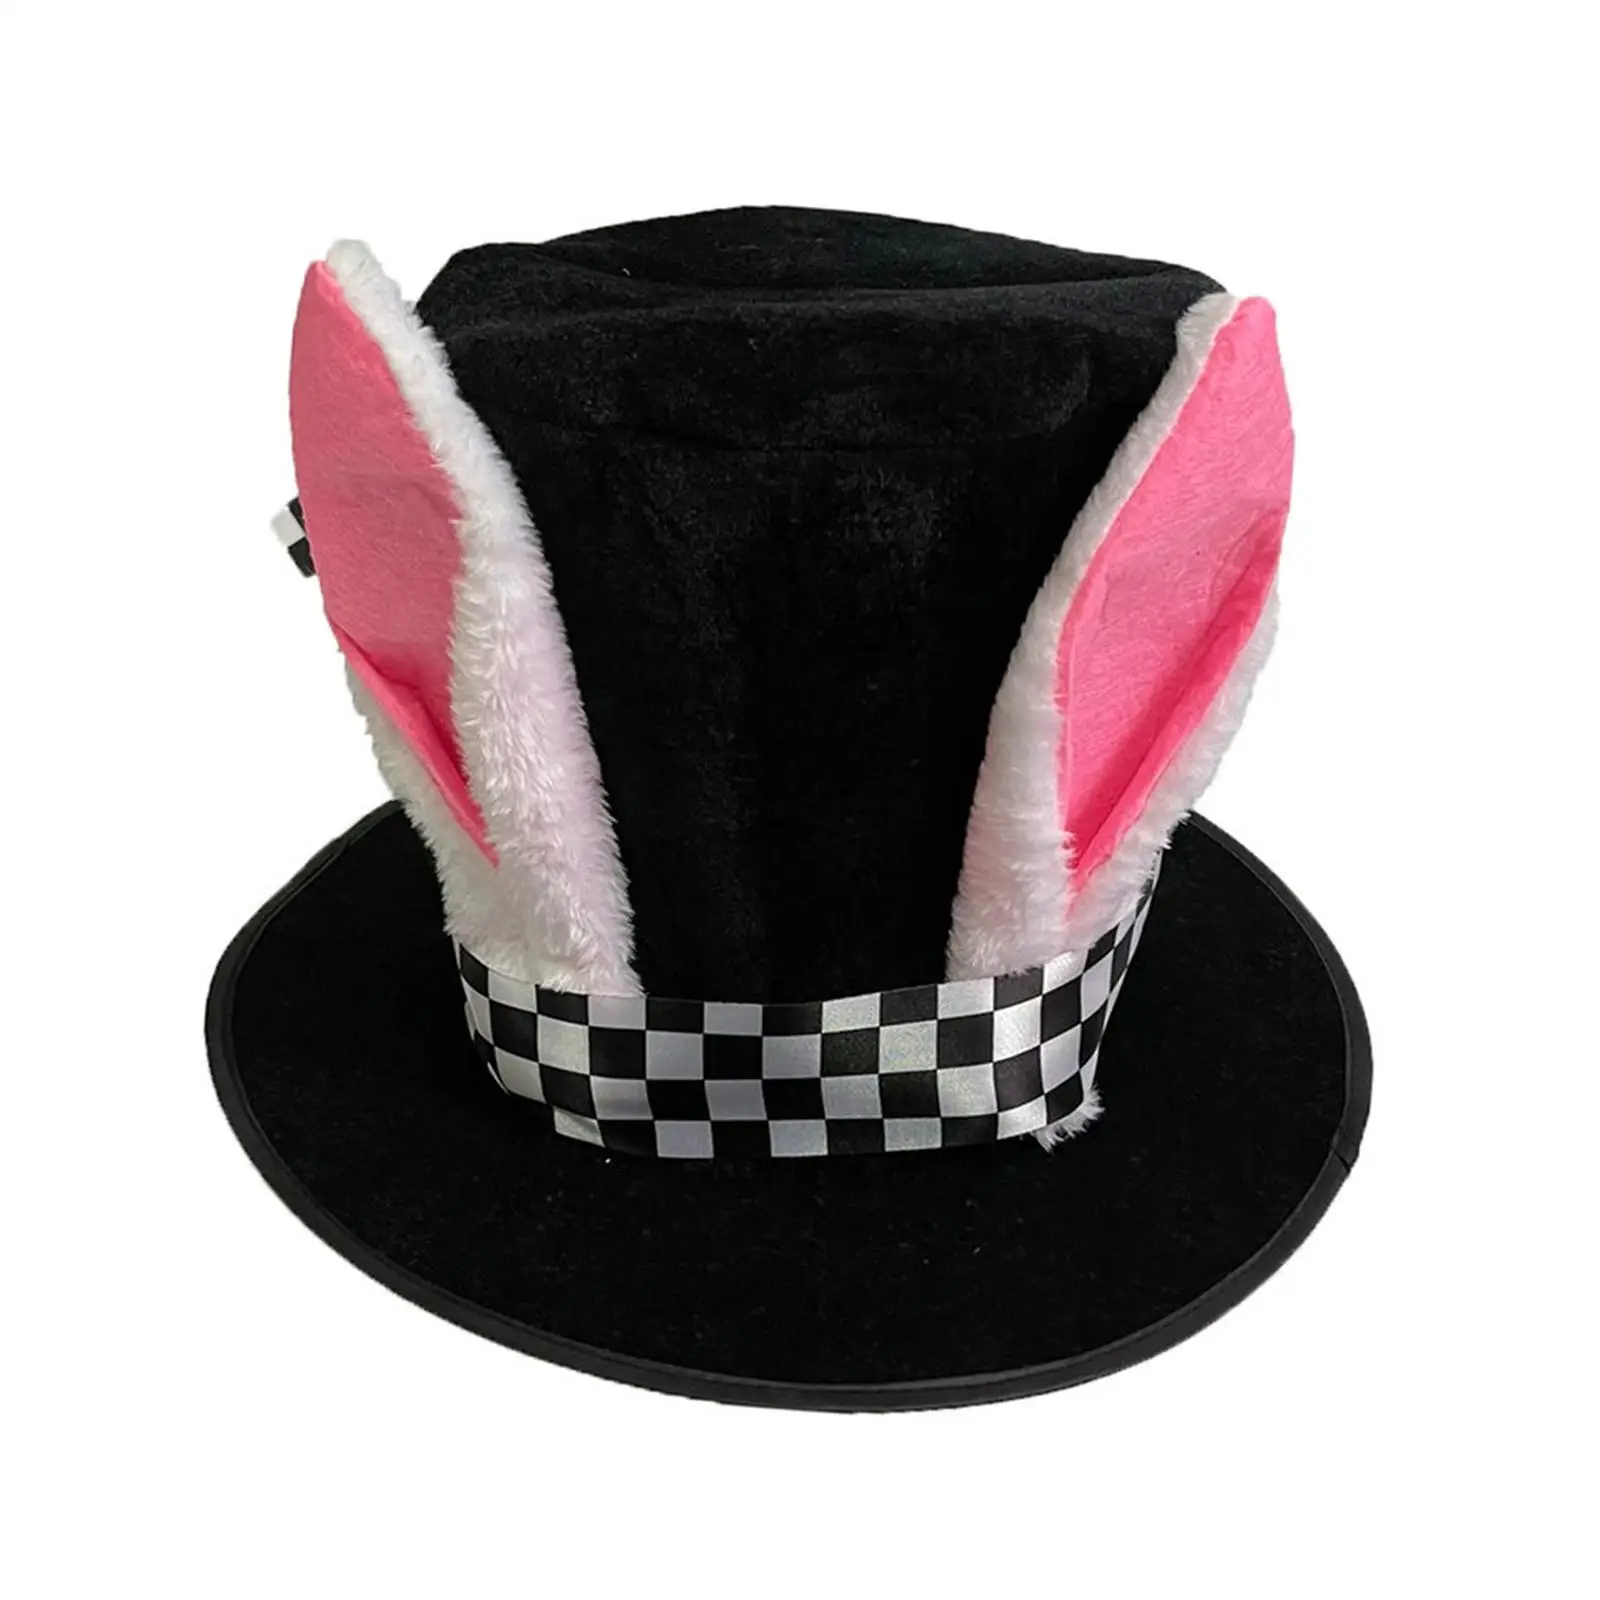 Bunny Ear Top Hat Fancy Dress Head Gear Headwear Birthday Gift Easter Rabbit Costume for Halloween Festival Party Adult Carnival